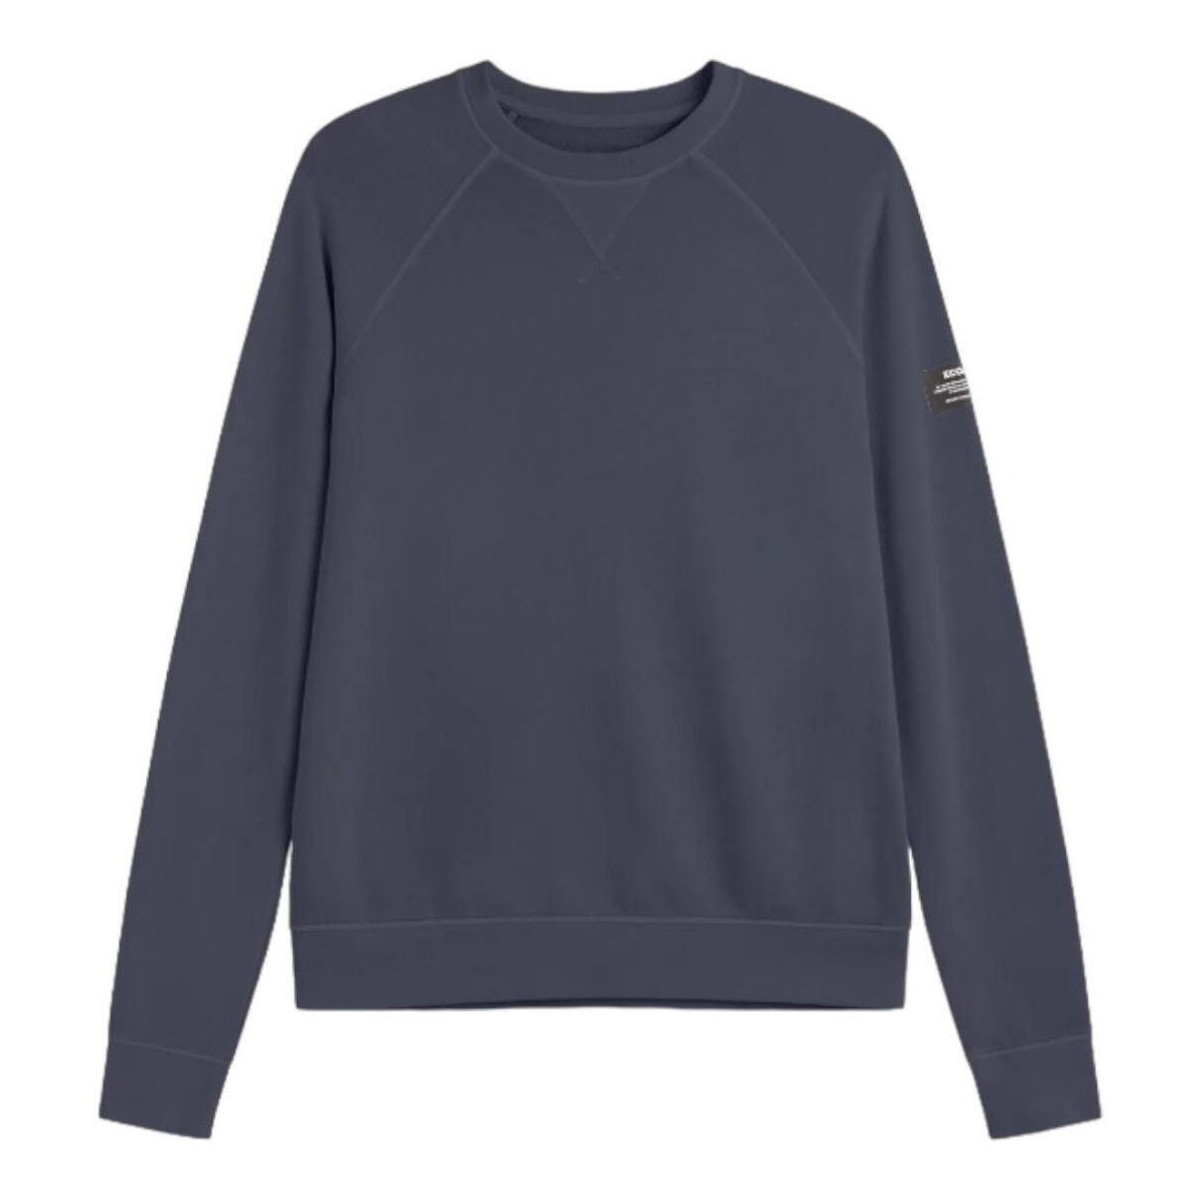 Textiel Heren Sweaters / Sweatshirts Ecoalf  Blauw